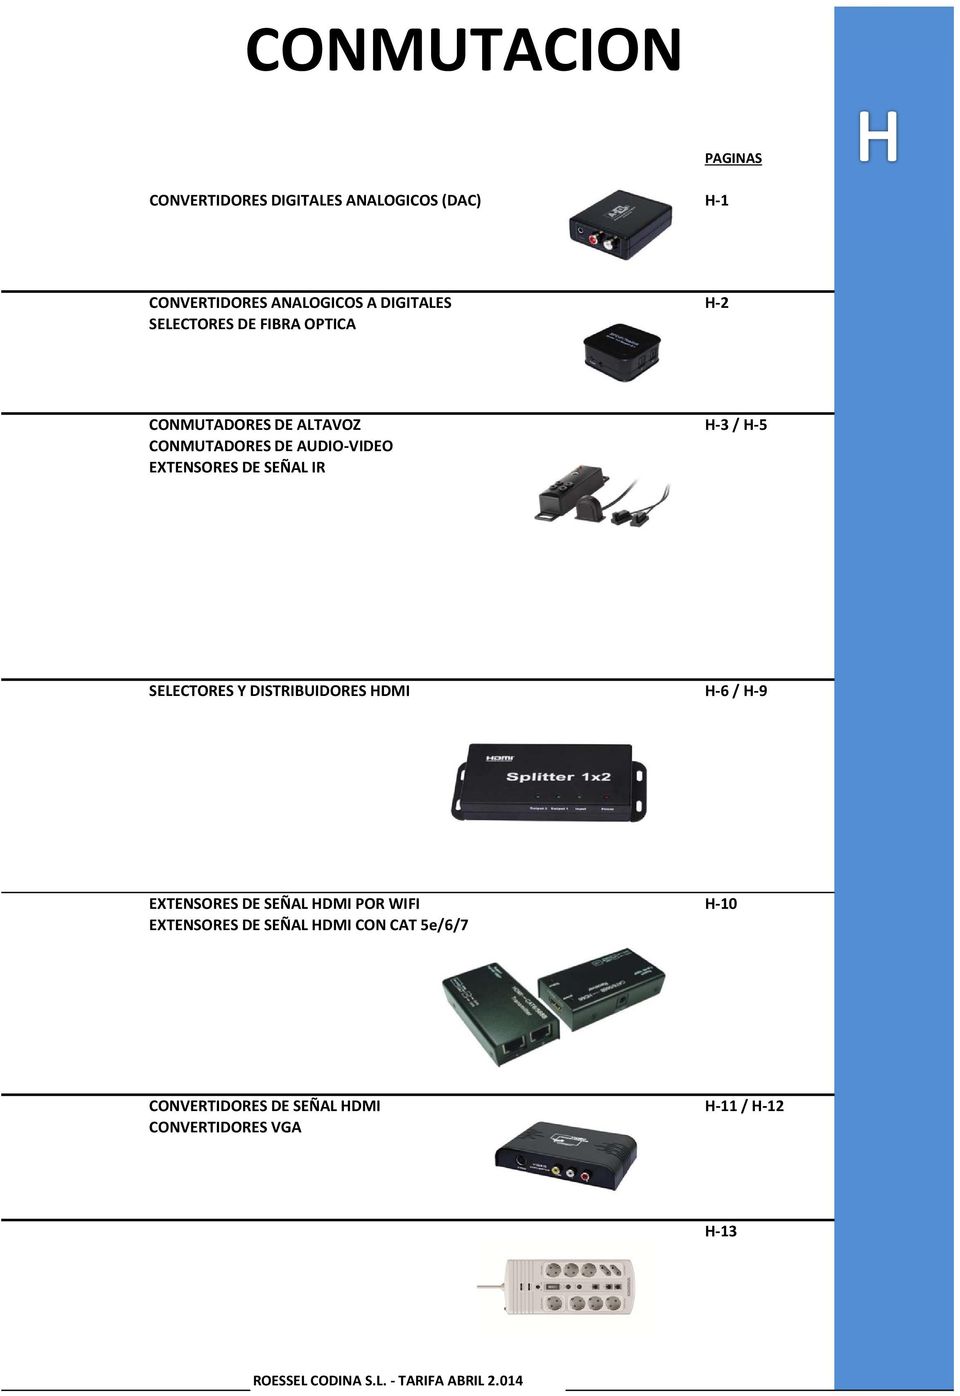 IR SELECTORES Y DISTRIBUIDORES HDMI H 6 / H 9 EXTENSORES DE SEÑAL HDMI POR WIFI H 10 EXTENSORES DE SEÑAL HDMI